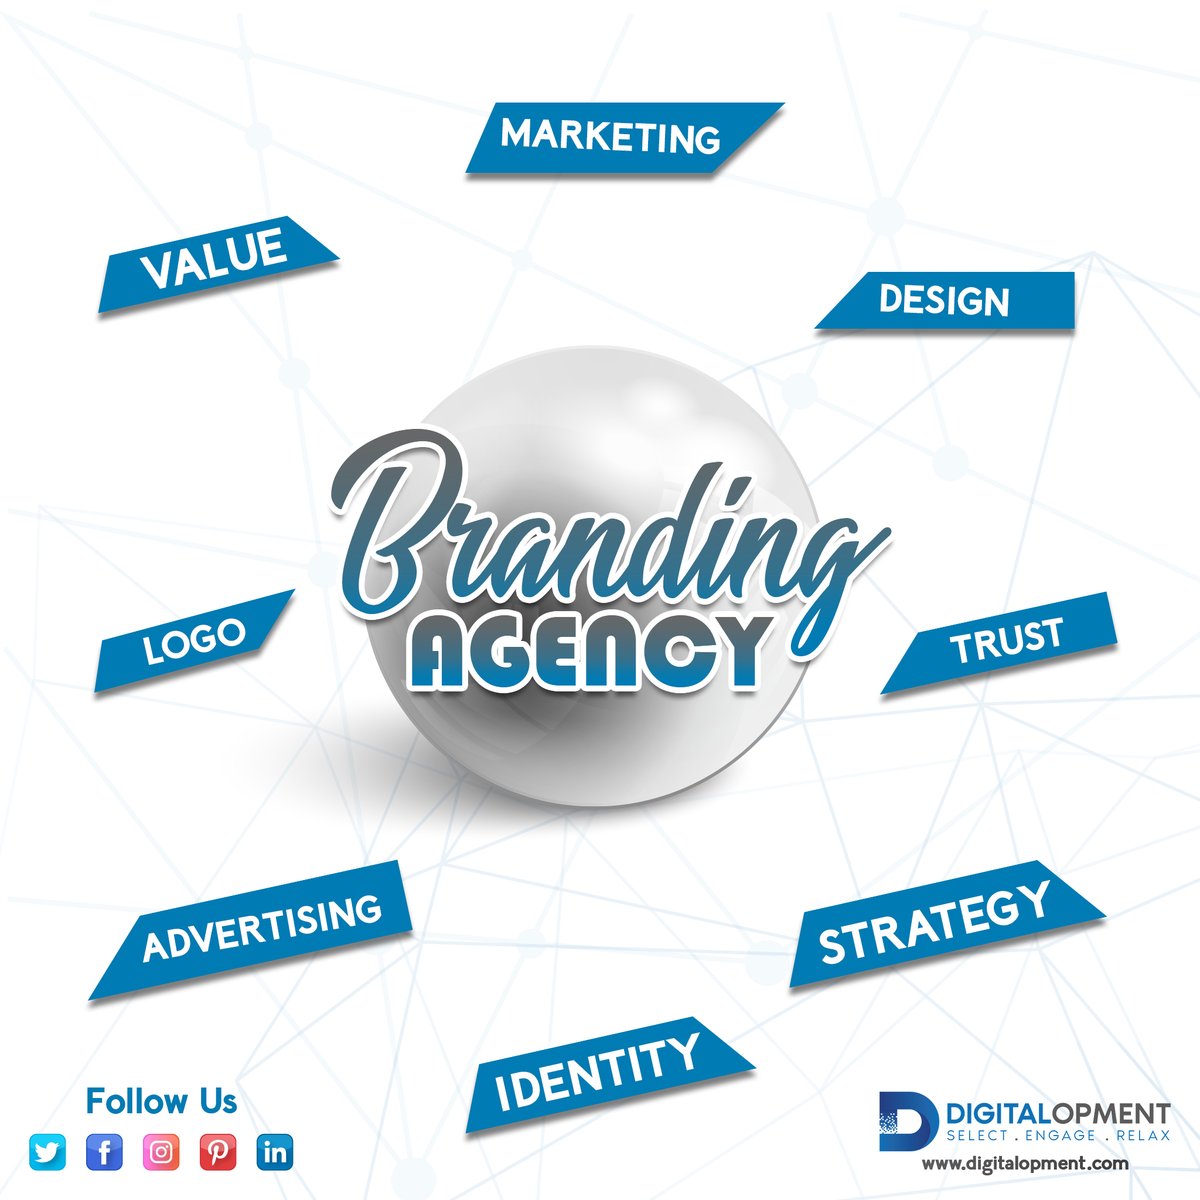 #brandingcompany #brandingandmarketing #brandingdesigner #brandingstrategist #BrandingSpecialist  #BrandingManagement #brandingdubai #dubaibranding #dubaibrandingagency #dubaieventsbranding #brandingagencydubai #brandingindubai #dubaibrandingagencies  #dubai  #digitalopment